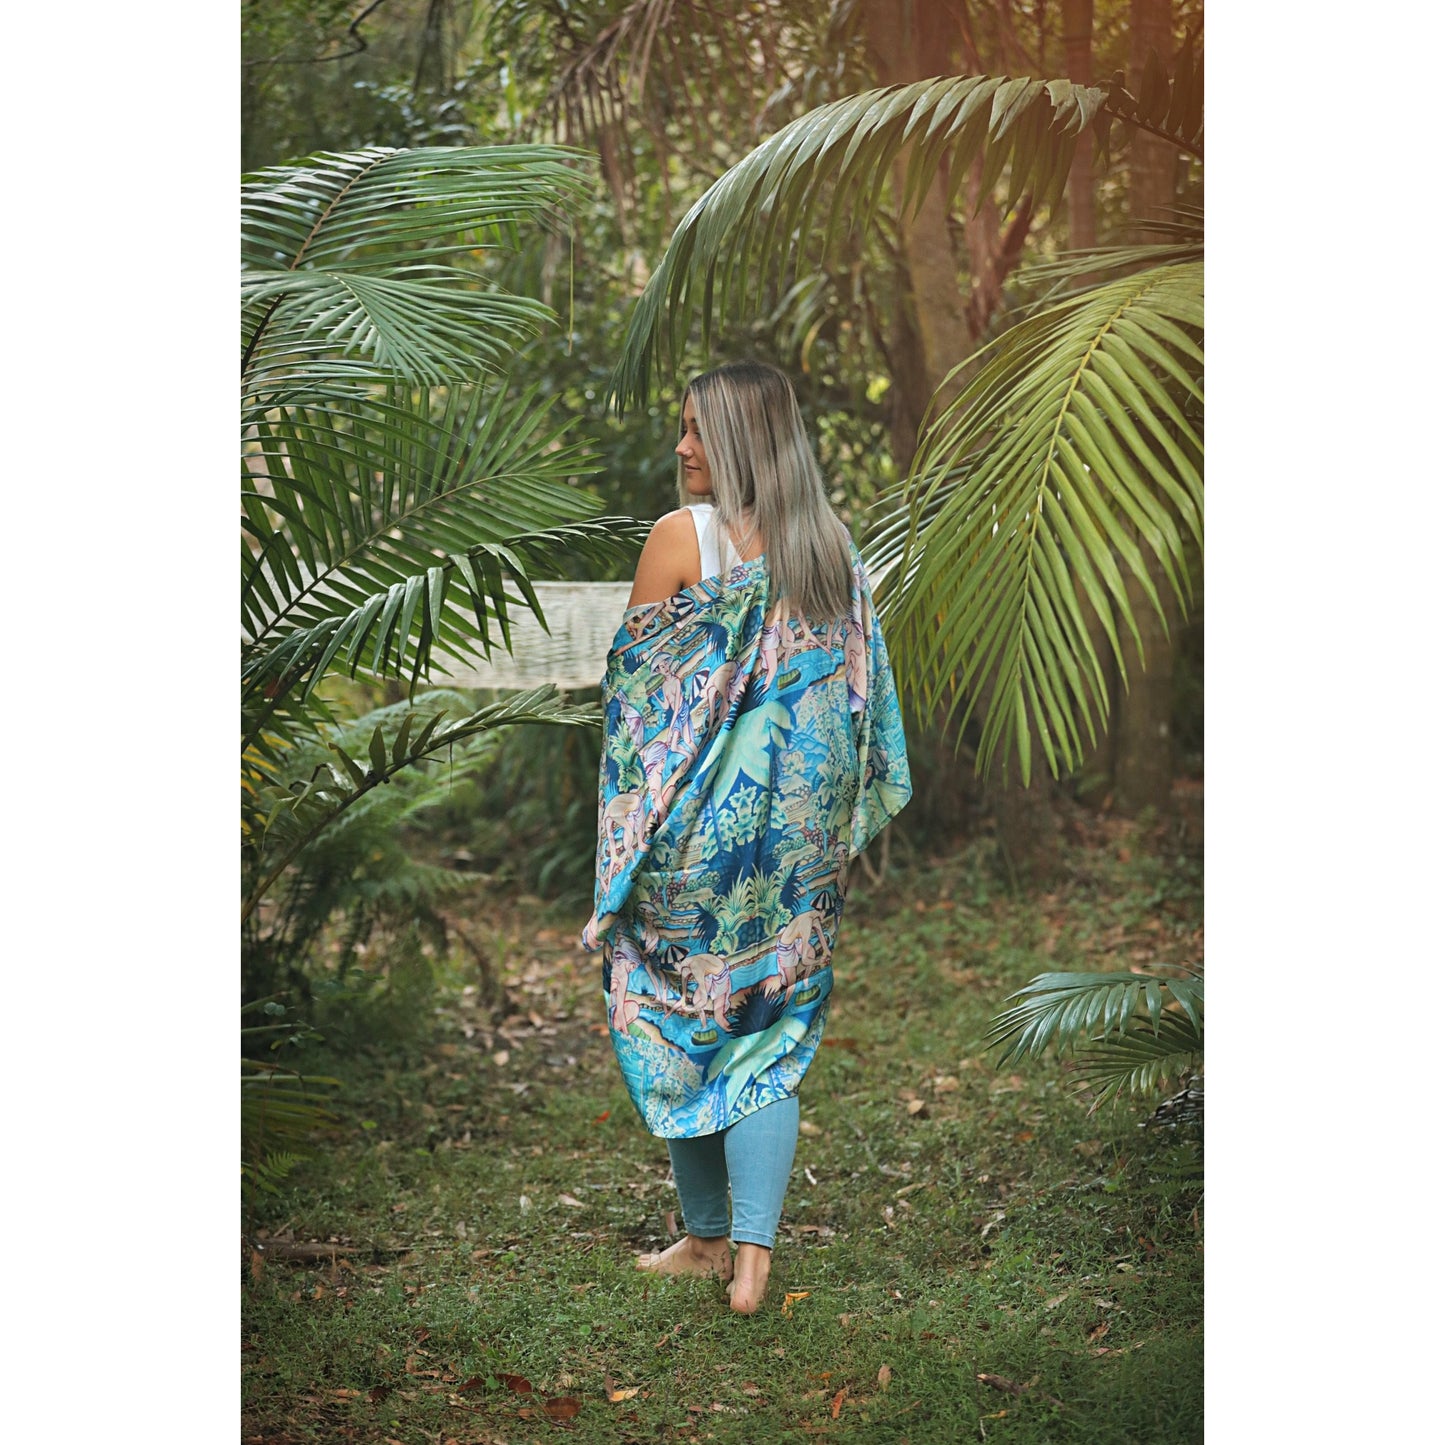 Bali Love kimono SALE $139 now $69